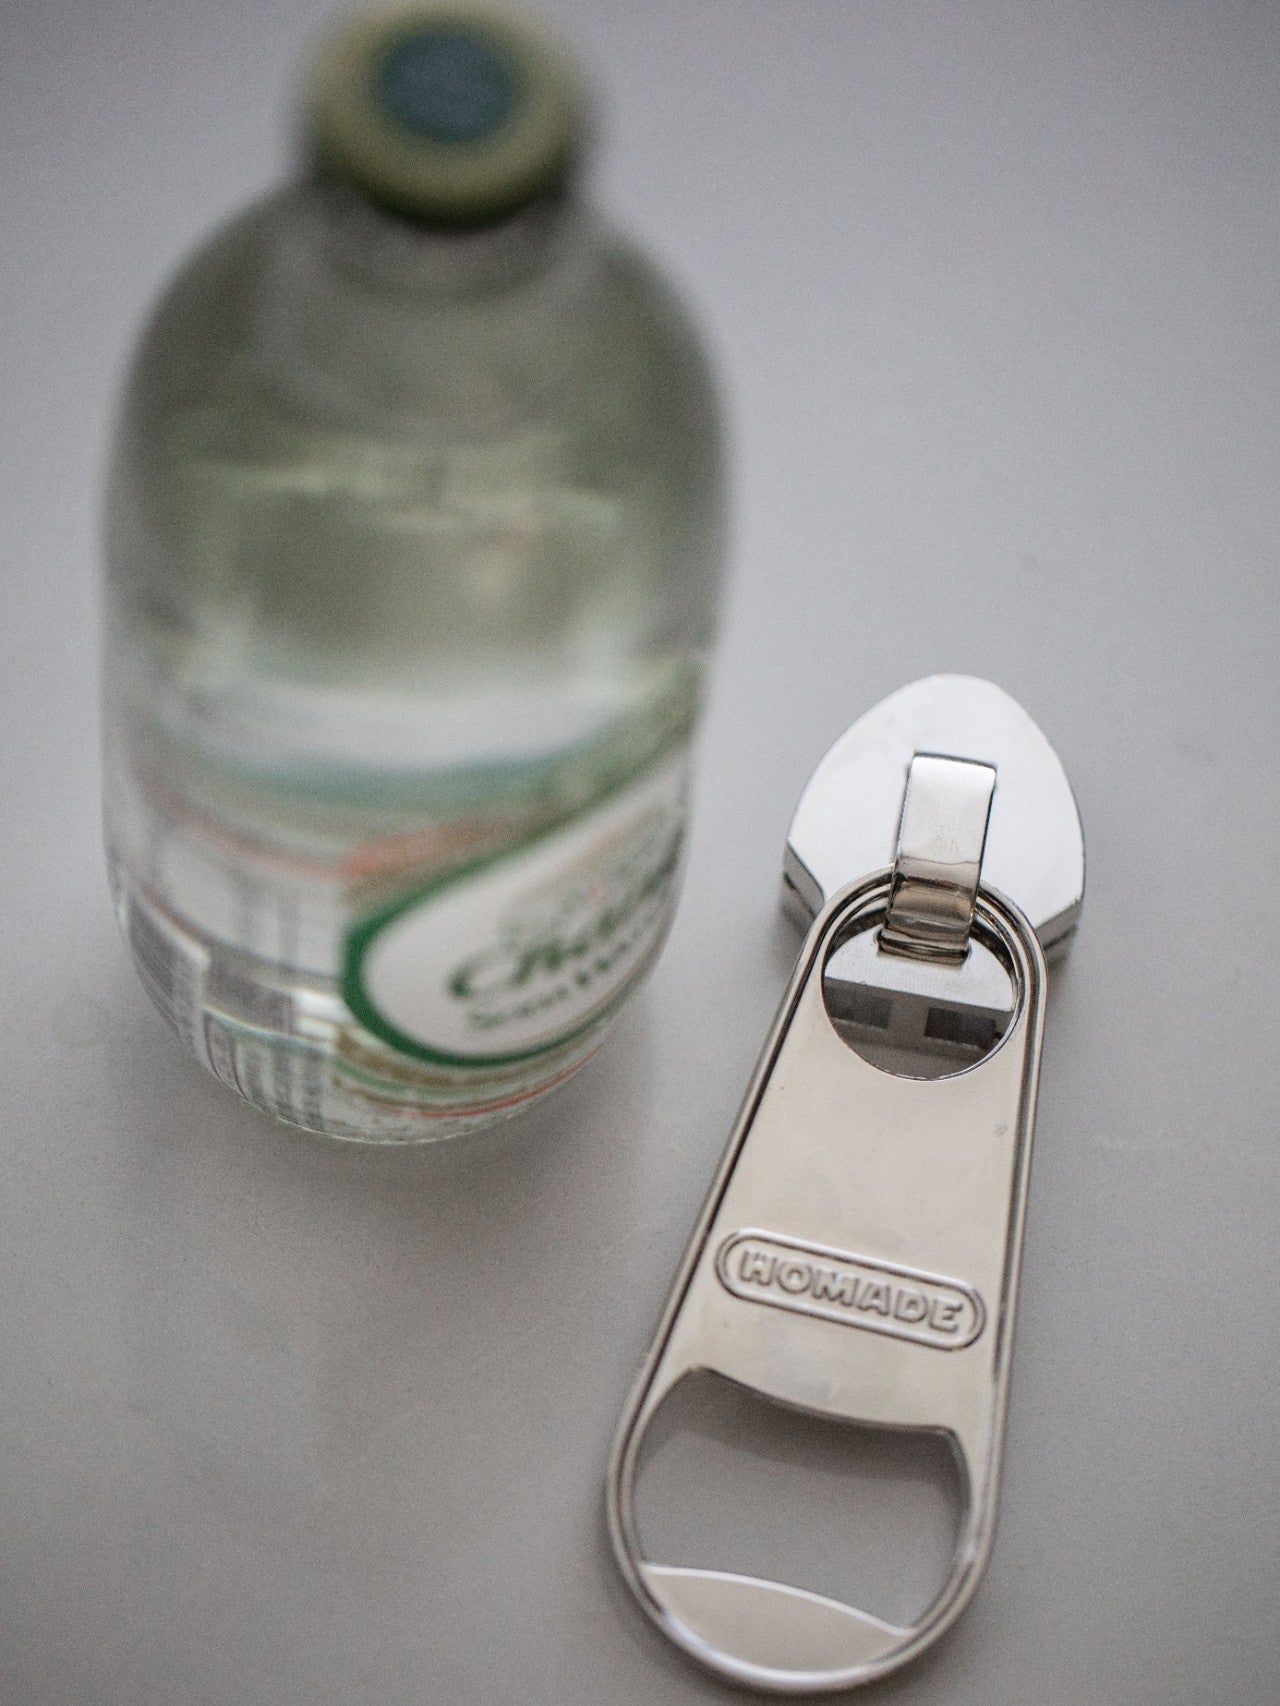 Trendy Zipper Bottle Opener - Creative Magnetic Beer Opener - Unique Zinc Alloy Magnetic Fridge Magnet